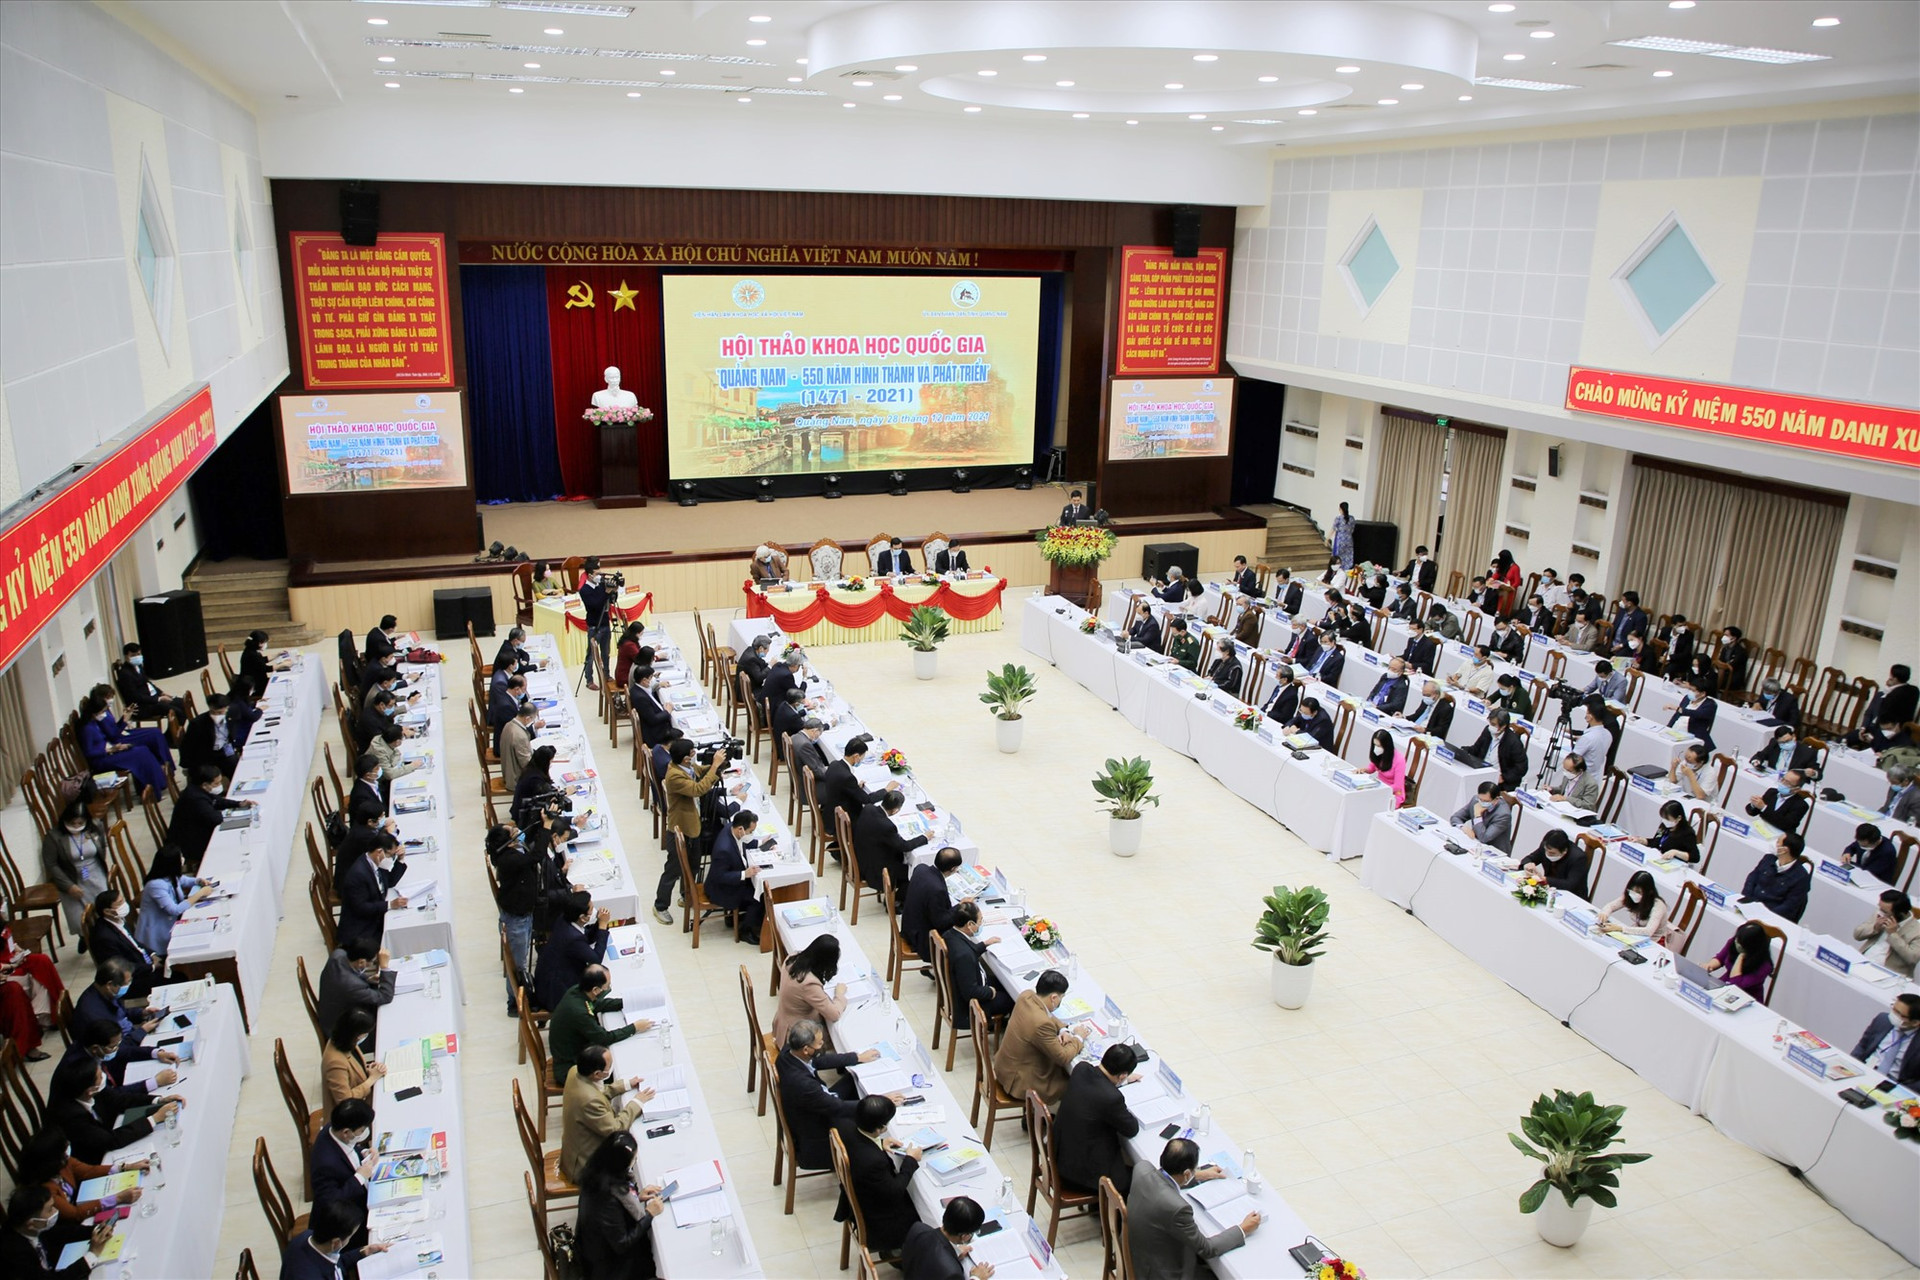 Hội thảo khoa học quốc gia “Quảng Nam - 550 năm hình thành và phát triển”. Ảnh: X.H